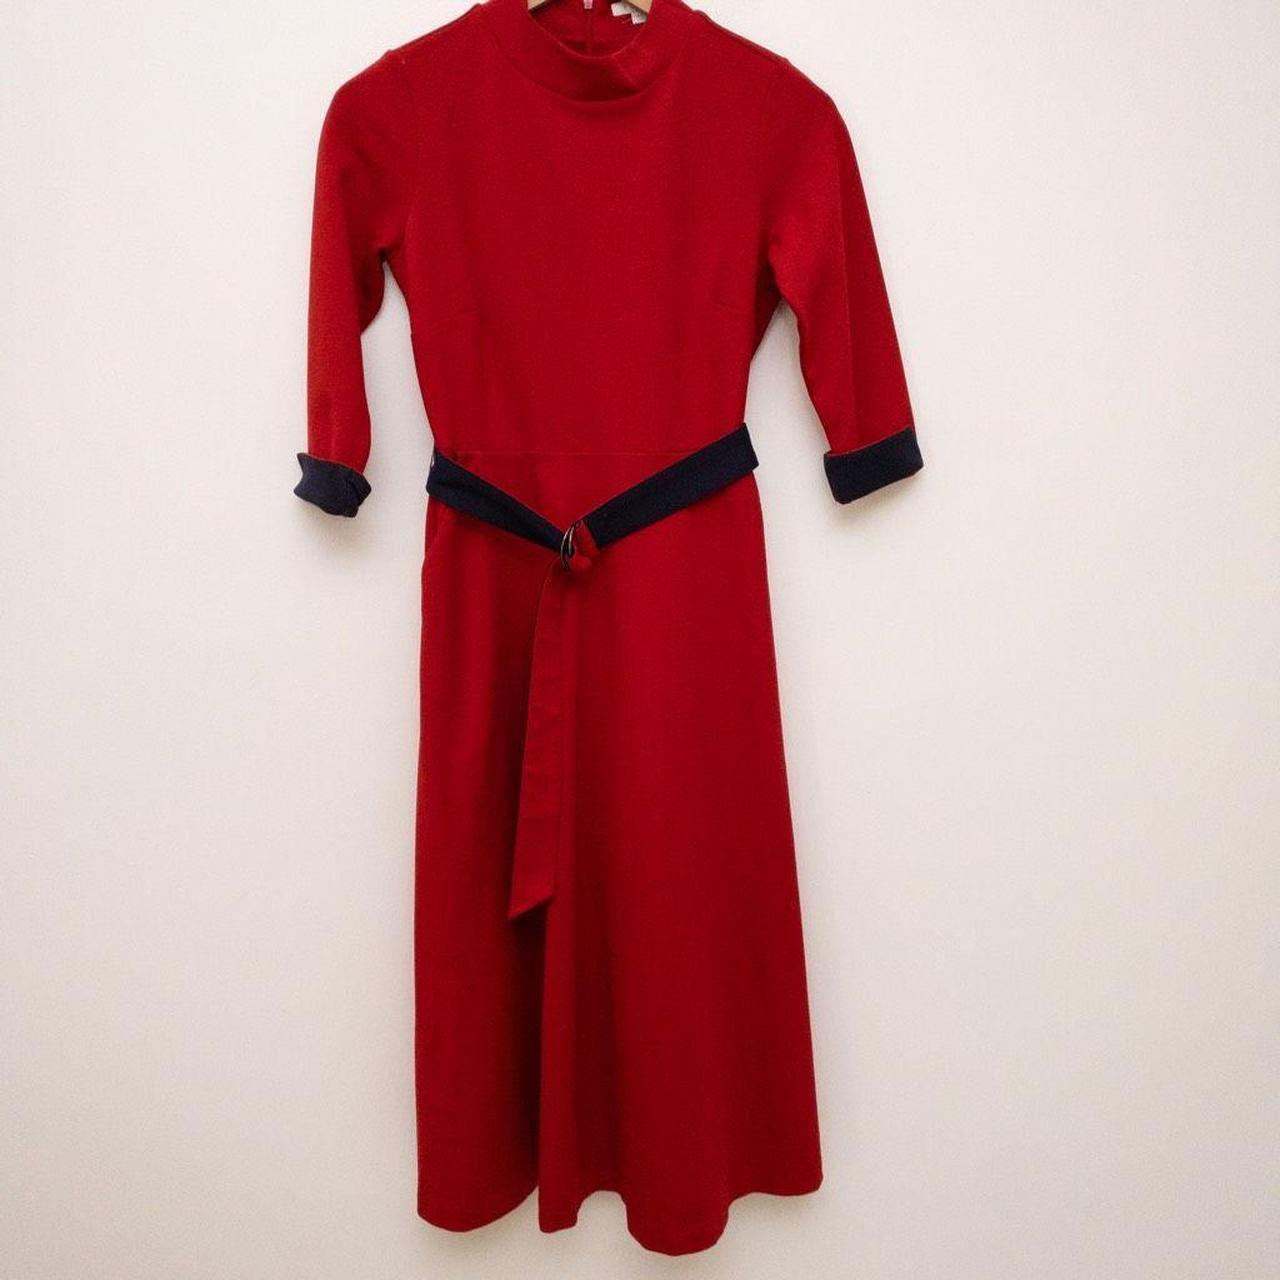 Boden Women's Red Dress | Depop